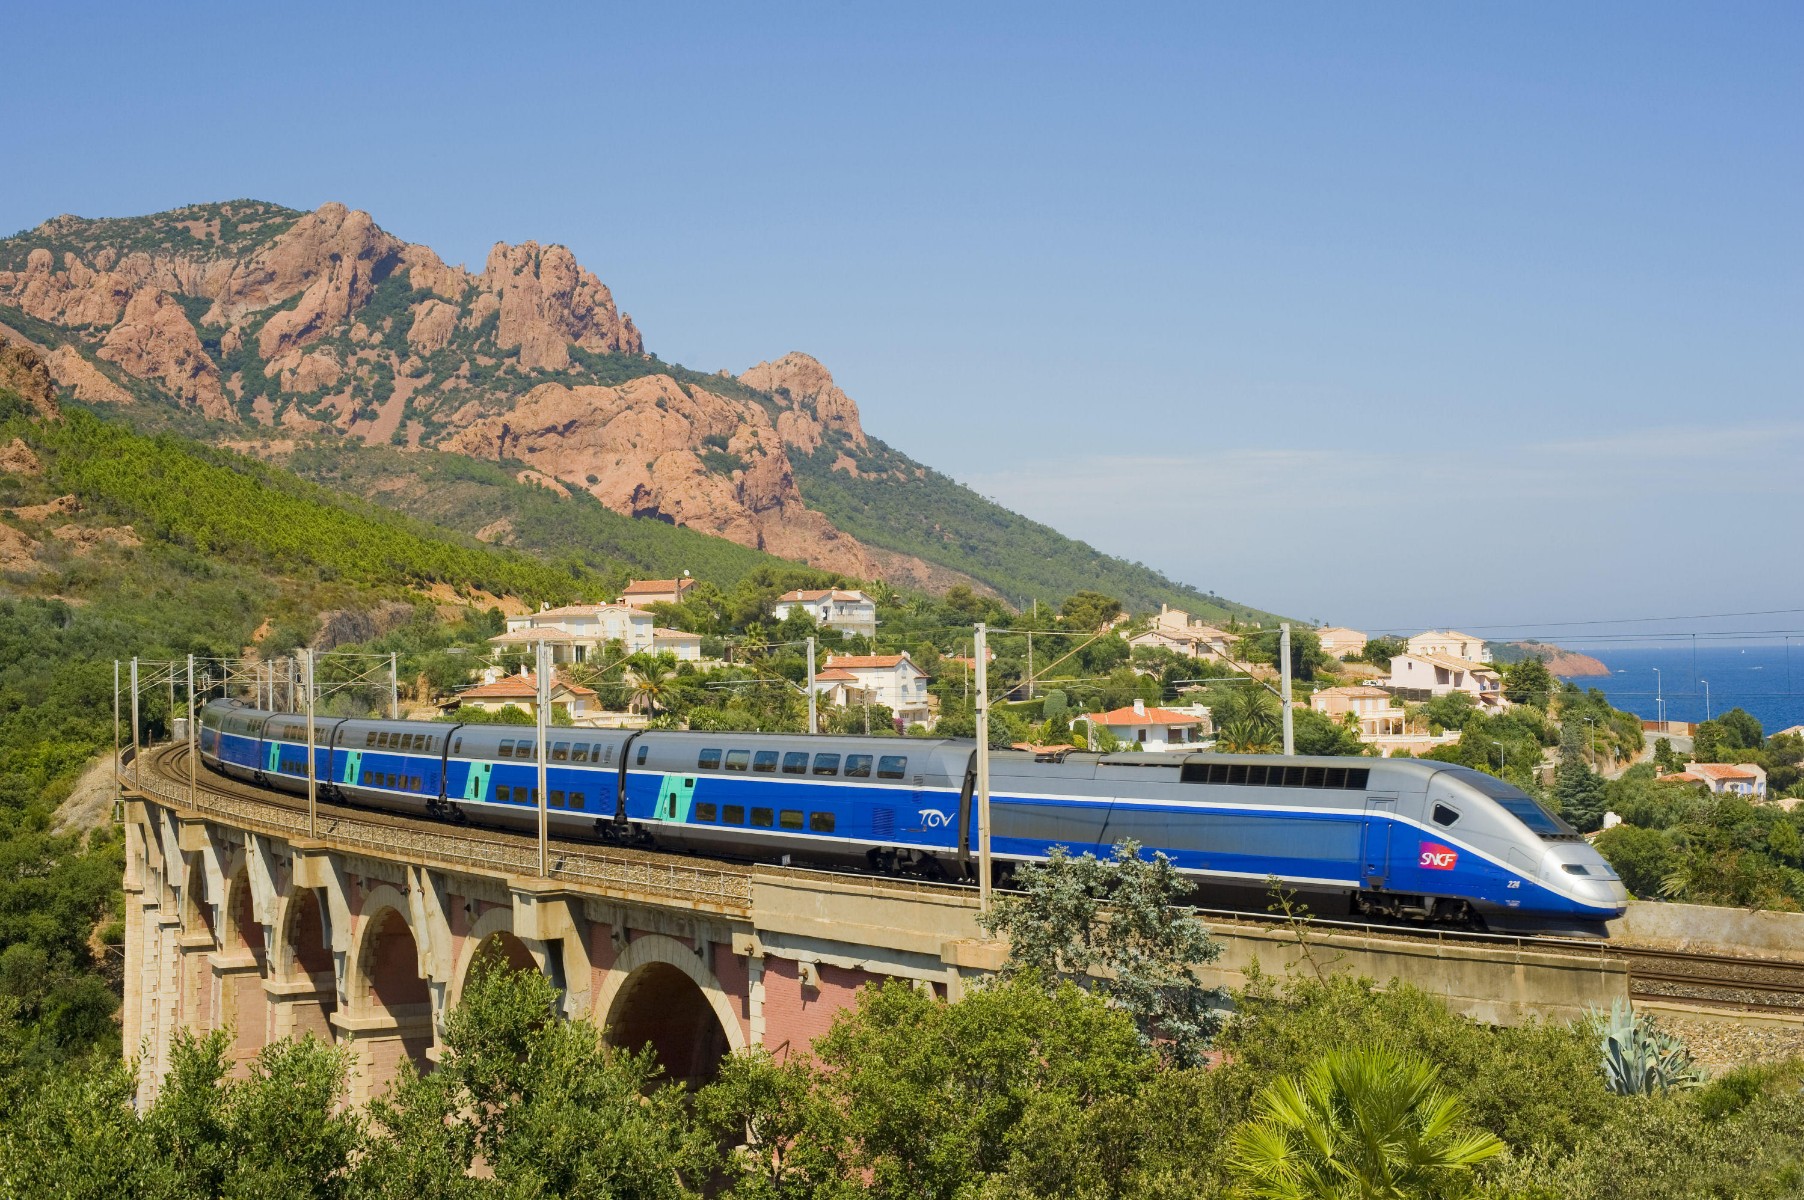 TGV hasít a Cote d'Azure-ön (kép forrása: happyrail.com)